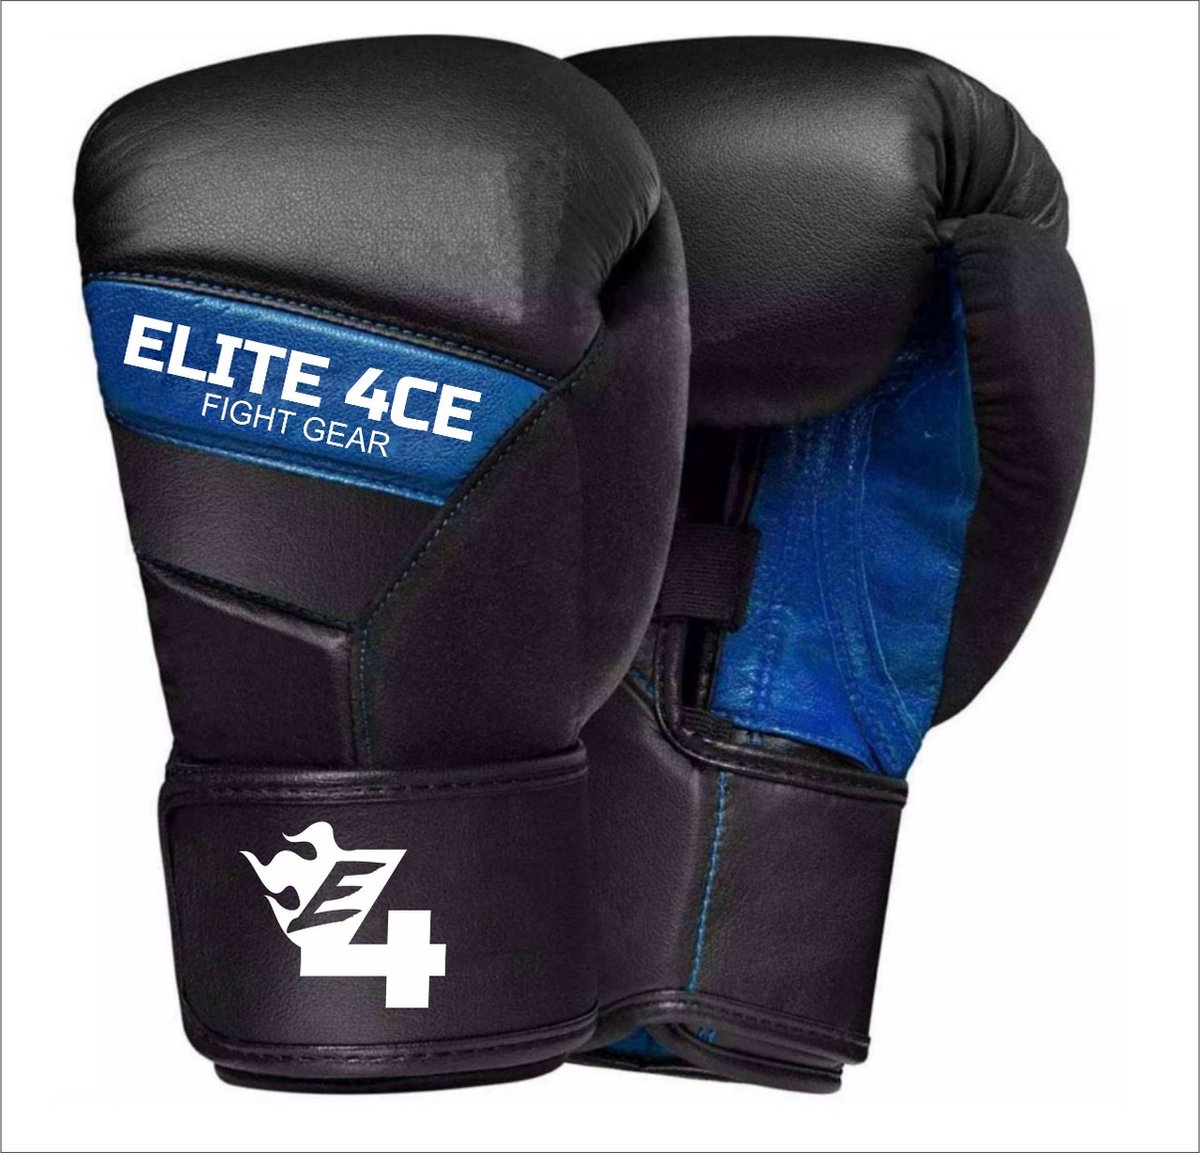 Elite Force (Kick)Bokshandschoenen - 14 OZ Box Handschoenen - Leer - Blauw/Zwart - Limited Edition